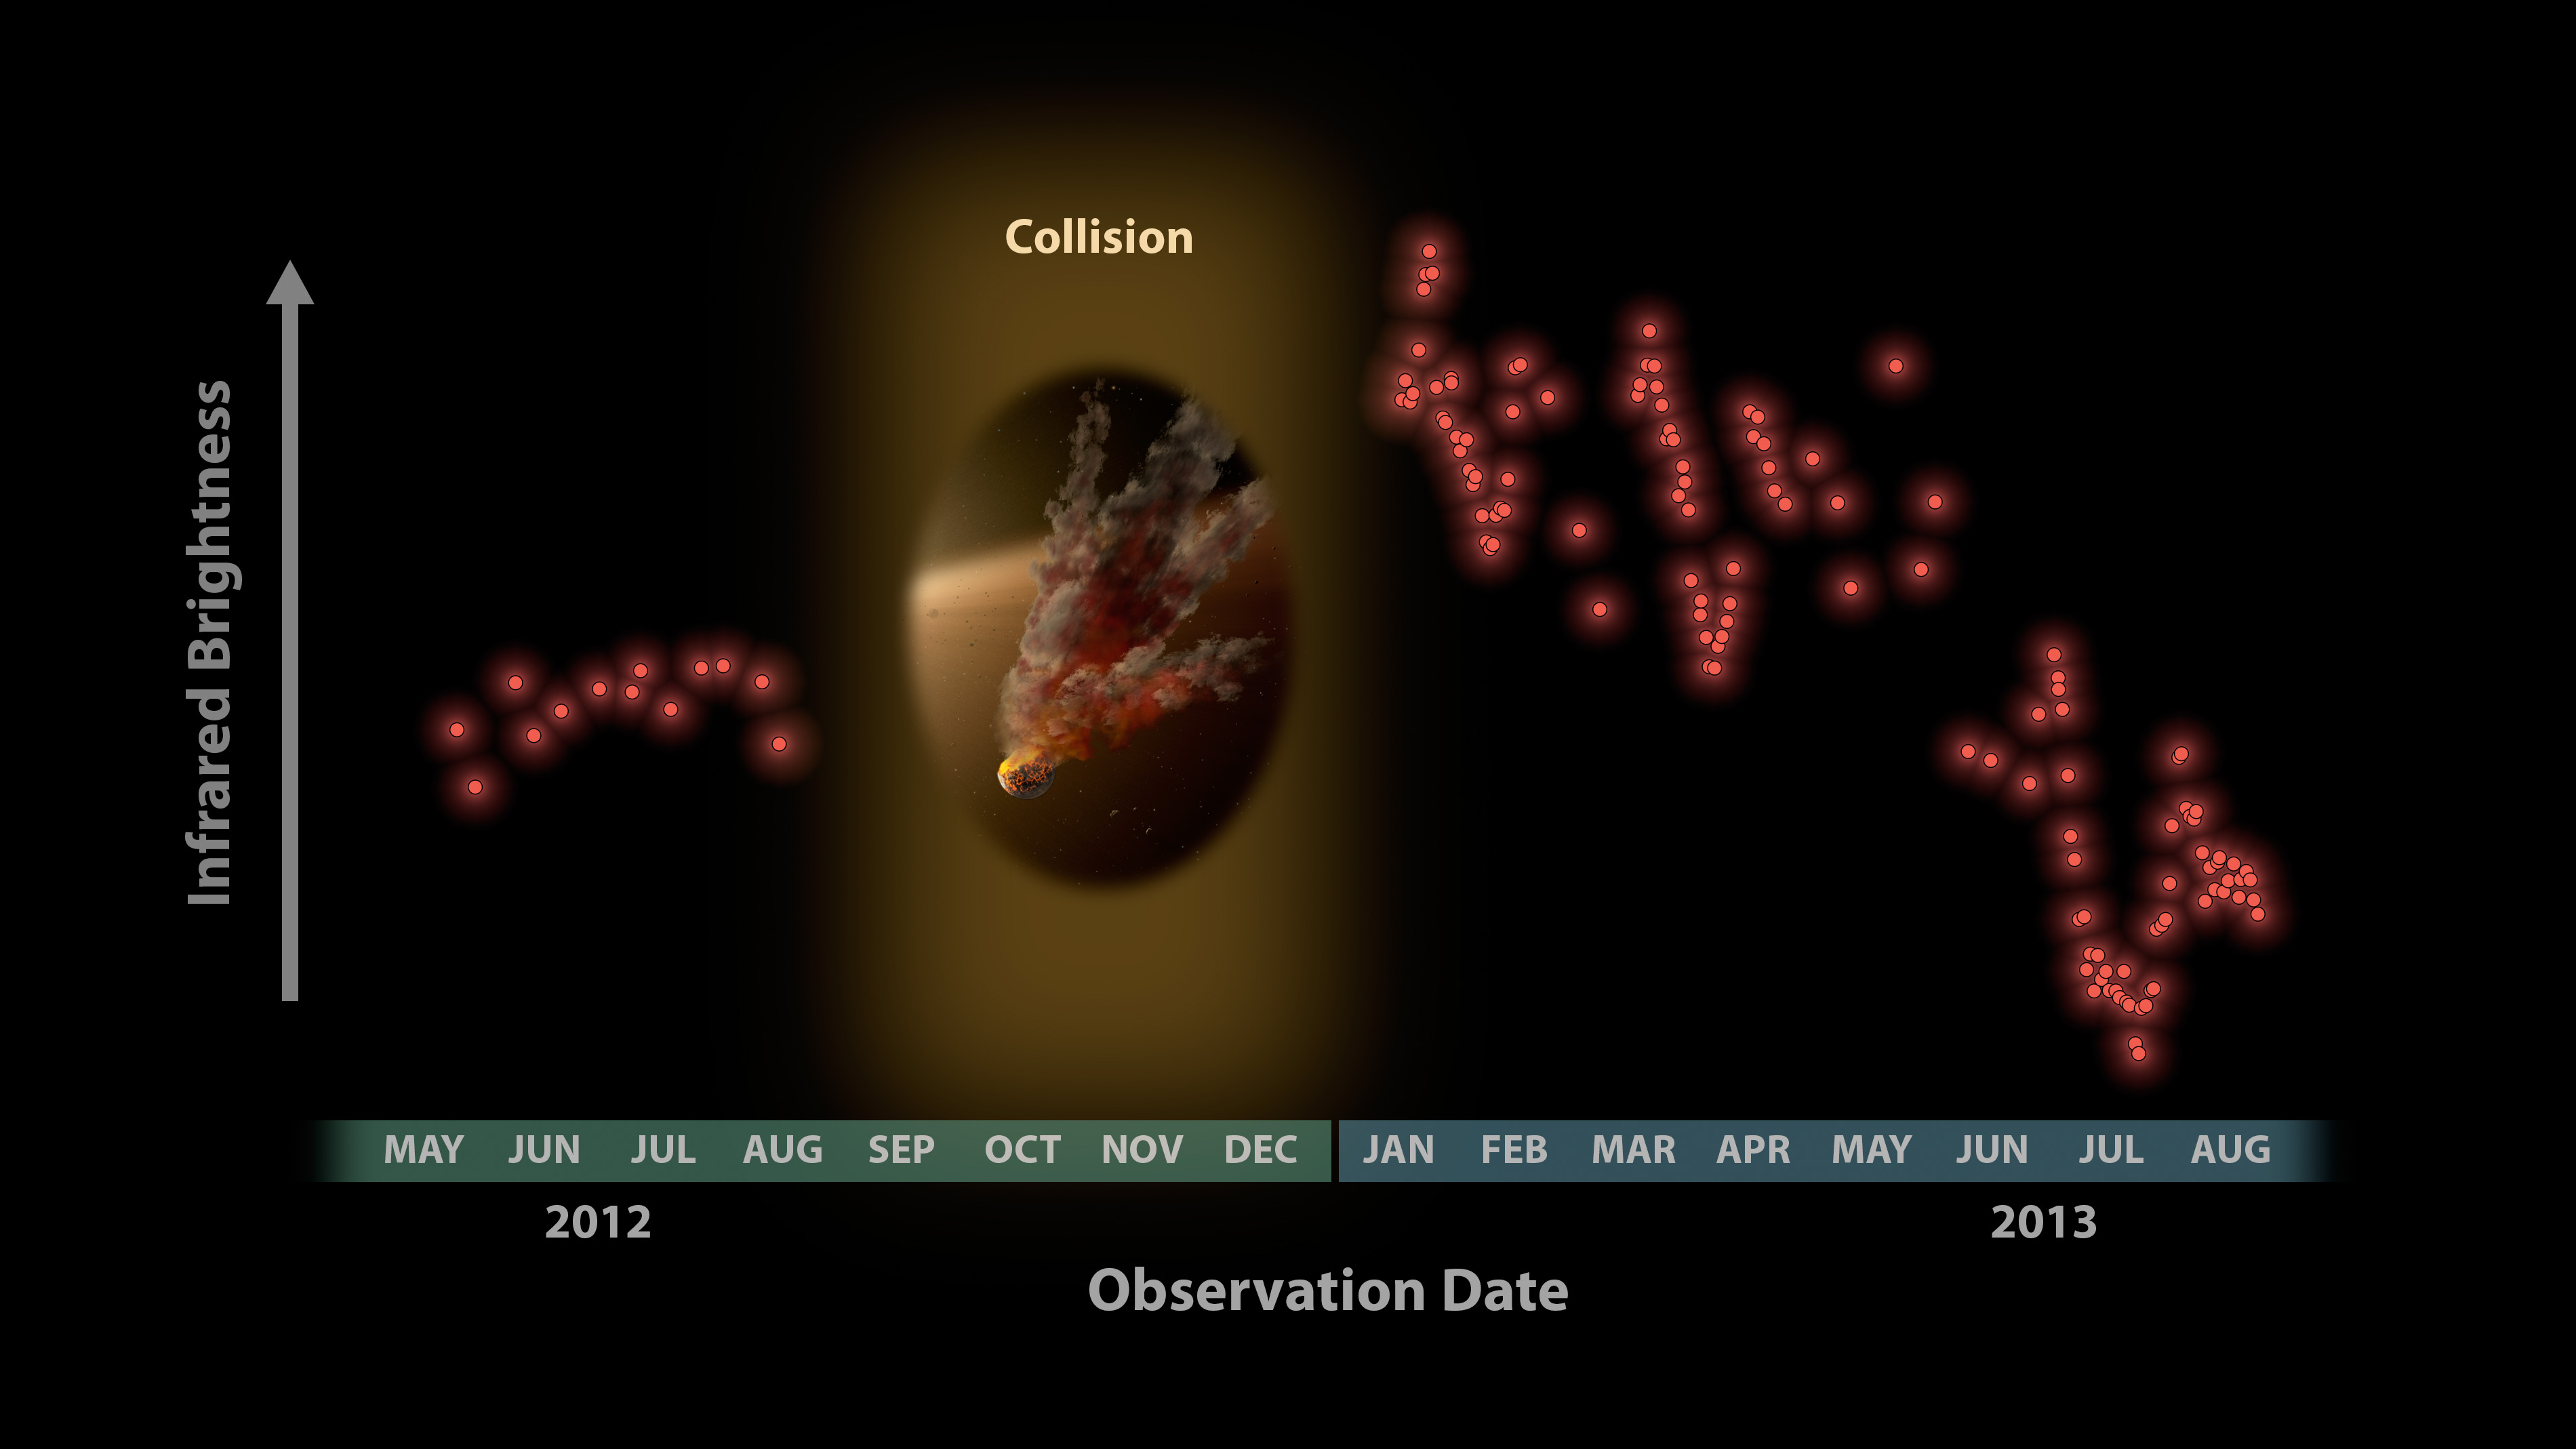 図4: NASA  スピッツァー宇宙望遠鏡による恒星NGC2547-ID8の周囲のダストからの赤外線強度の観測結果。横軸に観測日（2012年5月~ 13年8月)、  縦軸に赤外線強度が示されている。 NGC2547  が太陽に隠されたため12年8月から13年1月の期間は観測を中断した。13年1月の観測再開直後から信号が劇的に大きくなっているのは、観測中断期間に 2つの巨大な小惑星が激しく衝突し、その残骸によるダストが急増したためと考えられる。信号が急増した後の周期的な増減はダストの雲が恒星の周囲を回っており地球から見える部分が変化するため、また長期的な減少はダストが衝突を繰り返してさらに細かくなり、恒星から離れてゆくために起きると考えられる。クレジット：NASA/JPL-Caltech/University of  Arizona